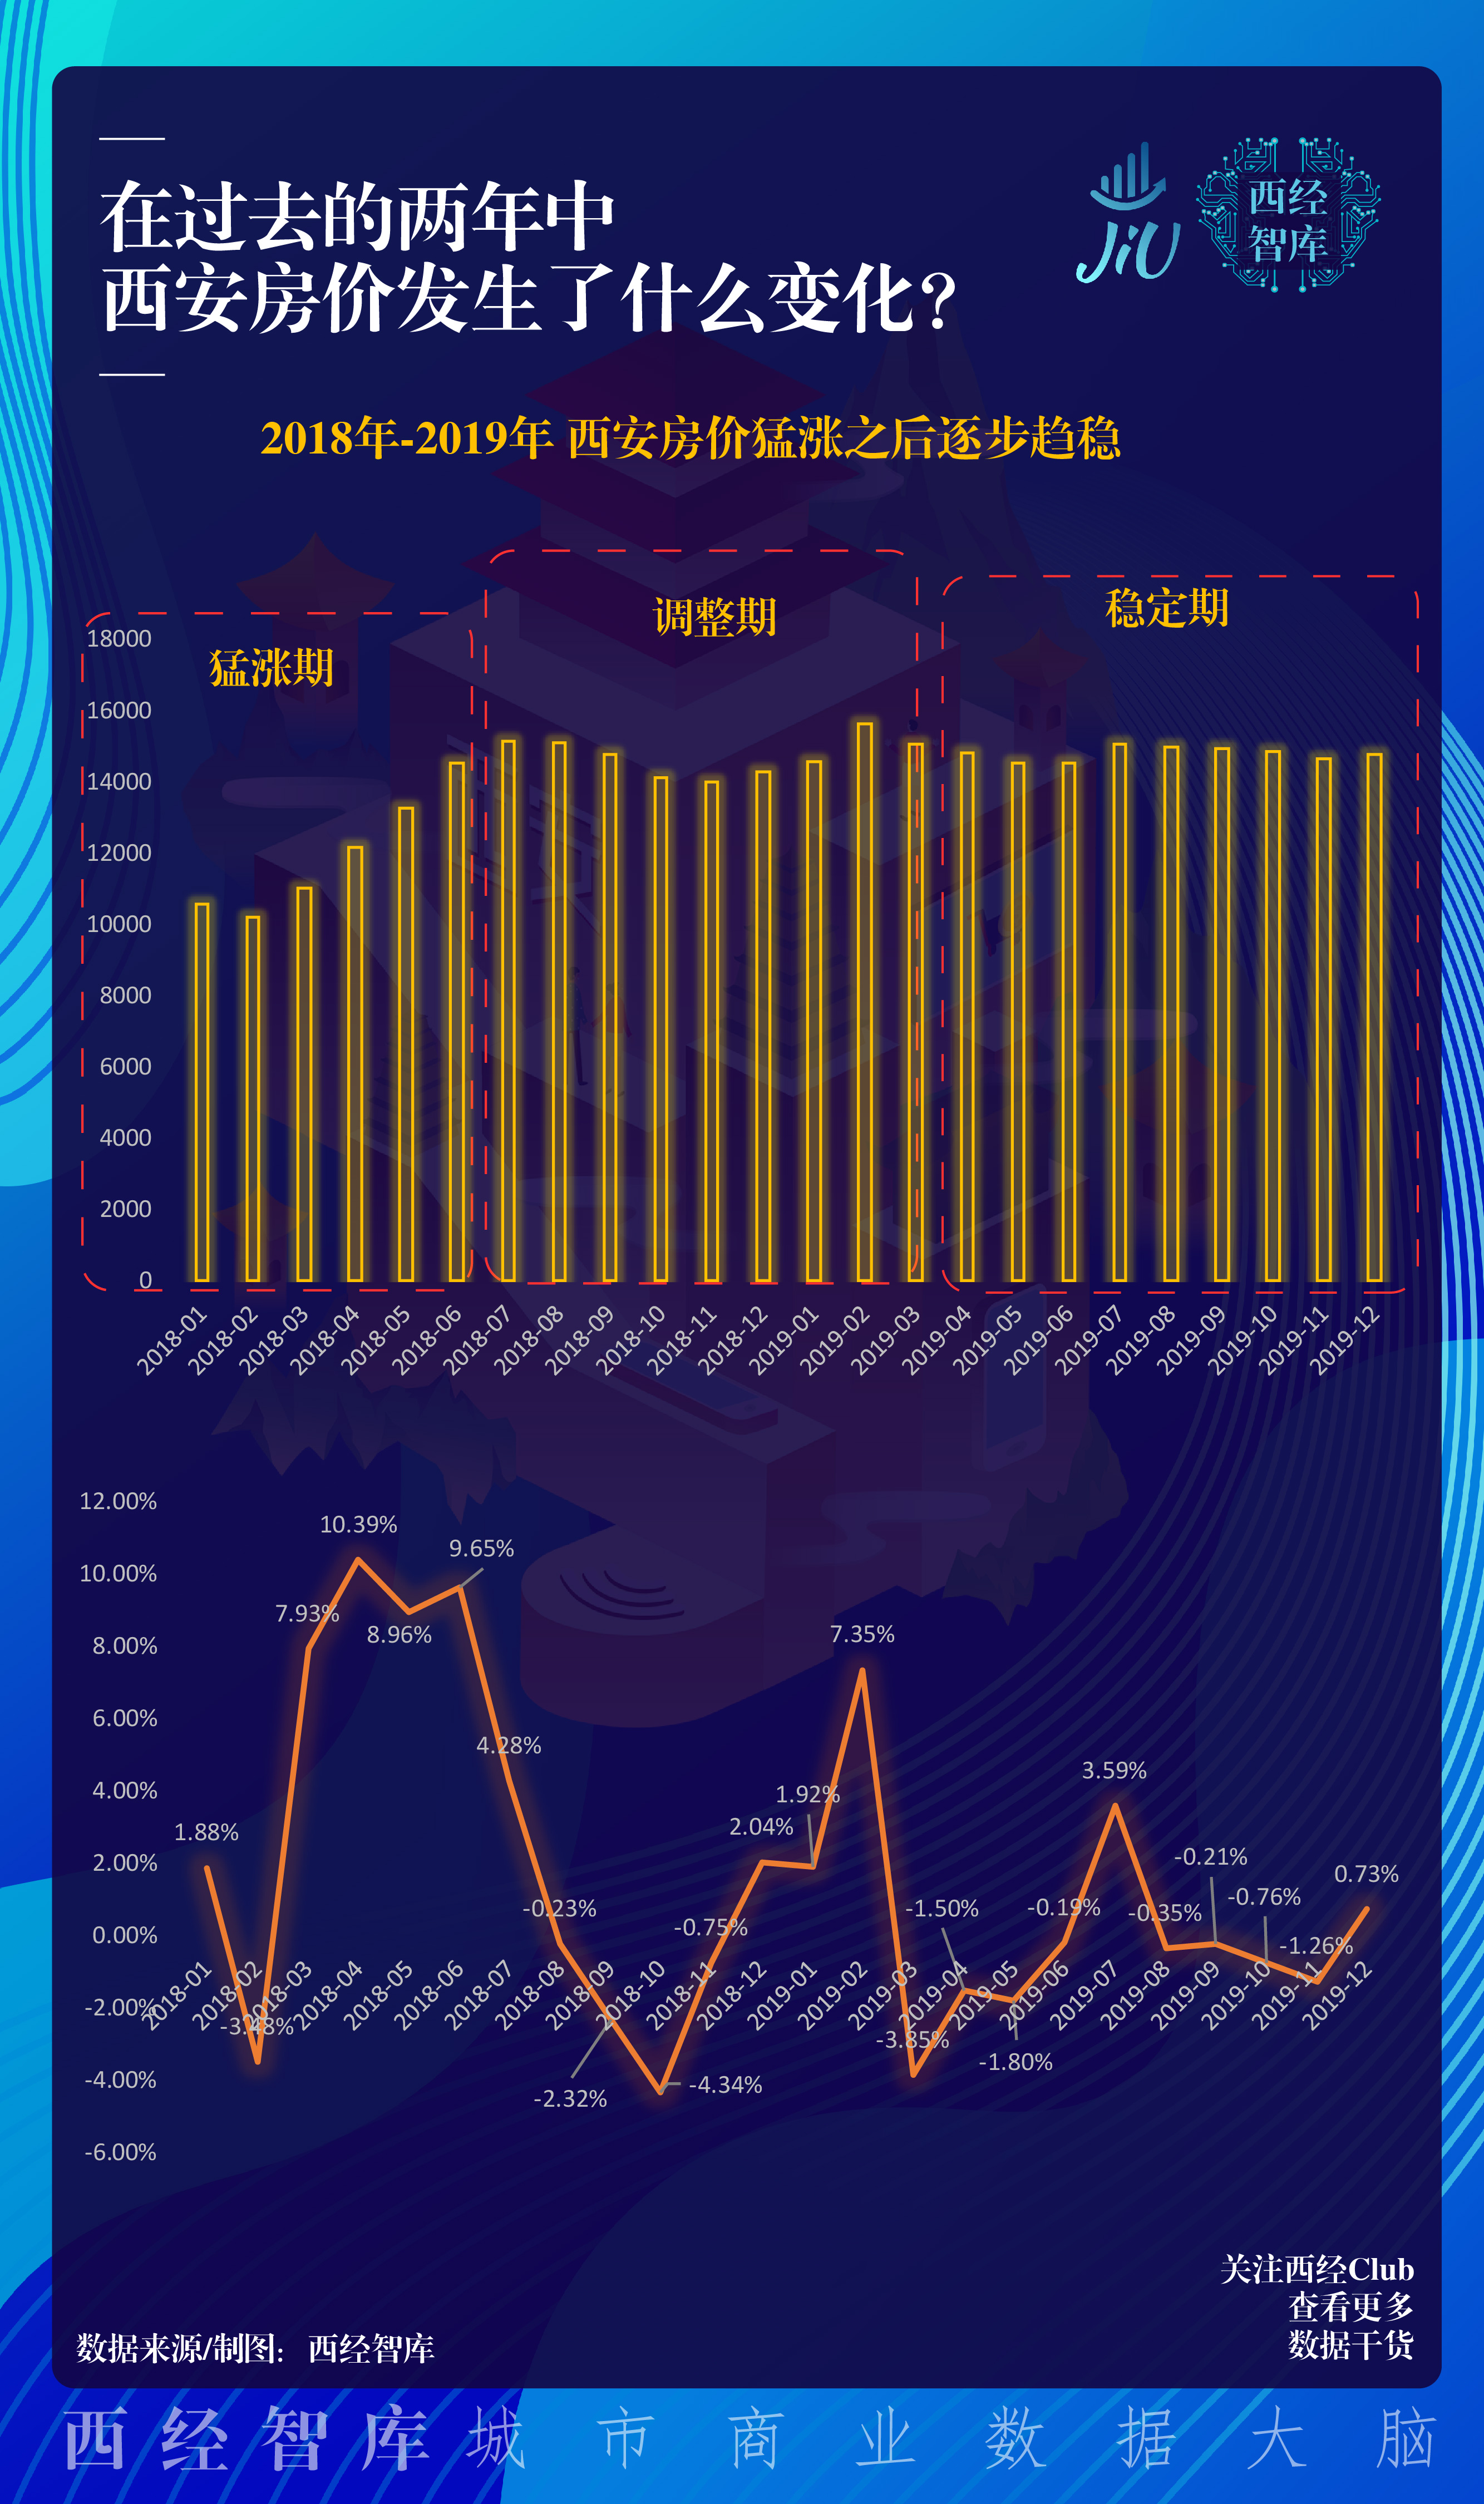 6月西安10行政区房价及涨跌情况 西安最新房价上涨到20197元/㎡_西安房价_聚汇数据